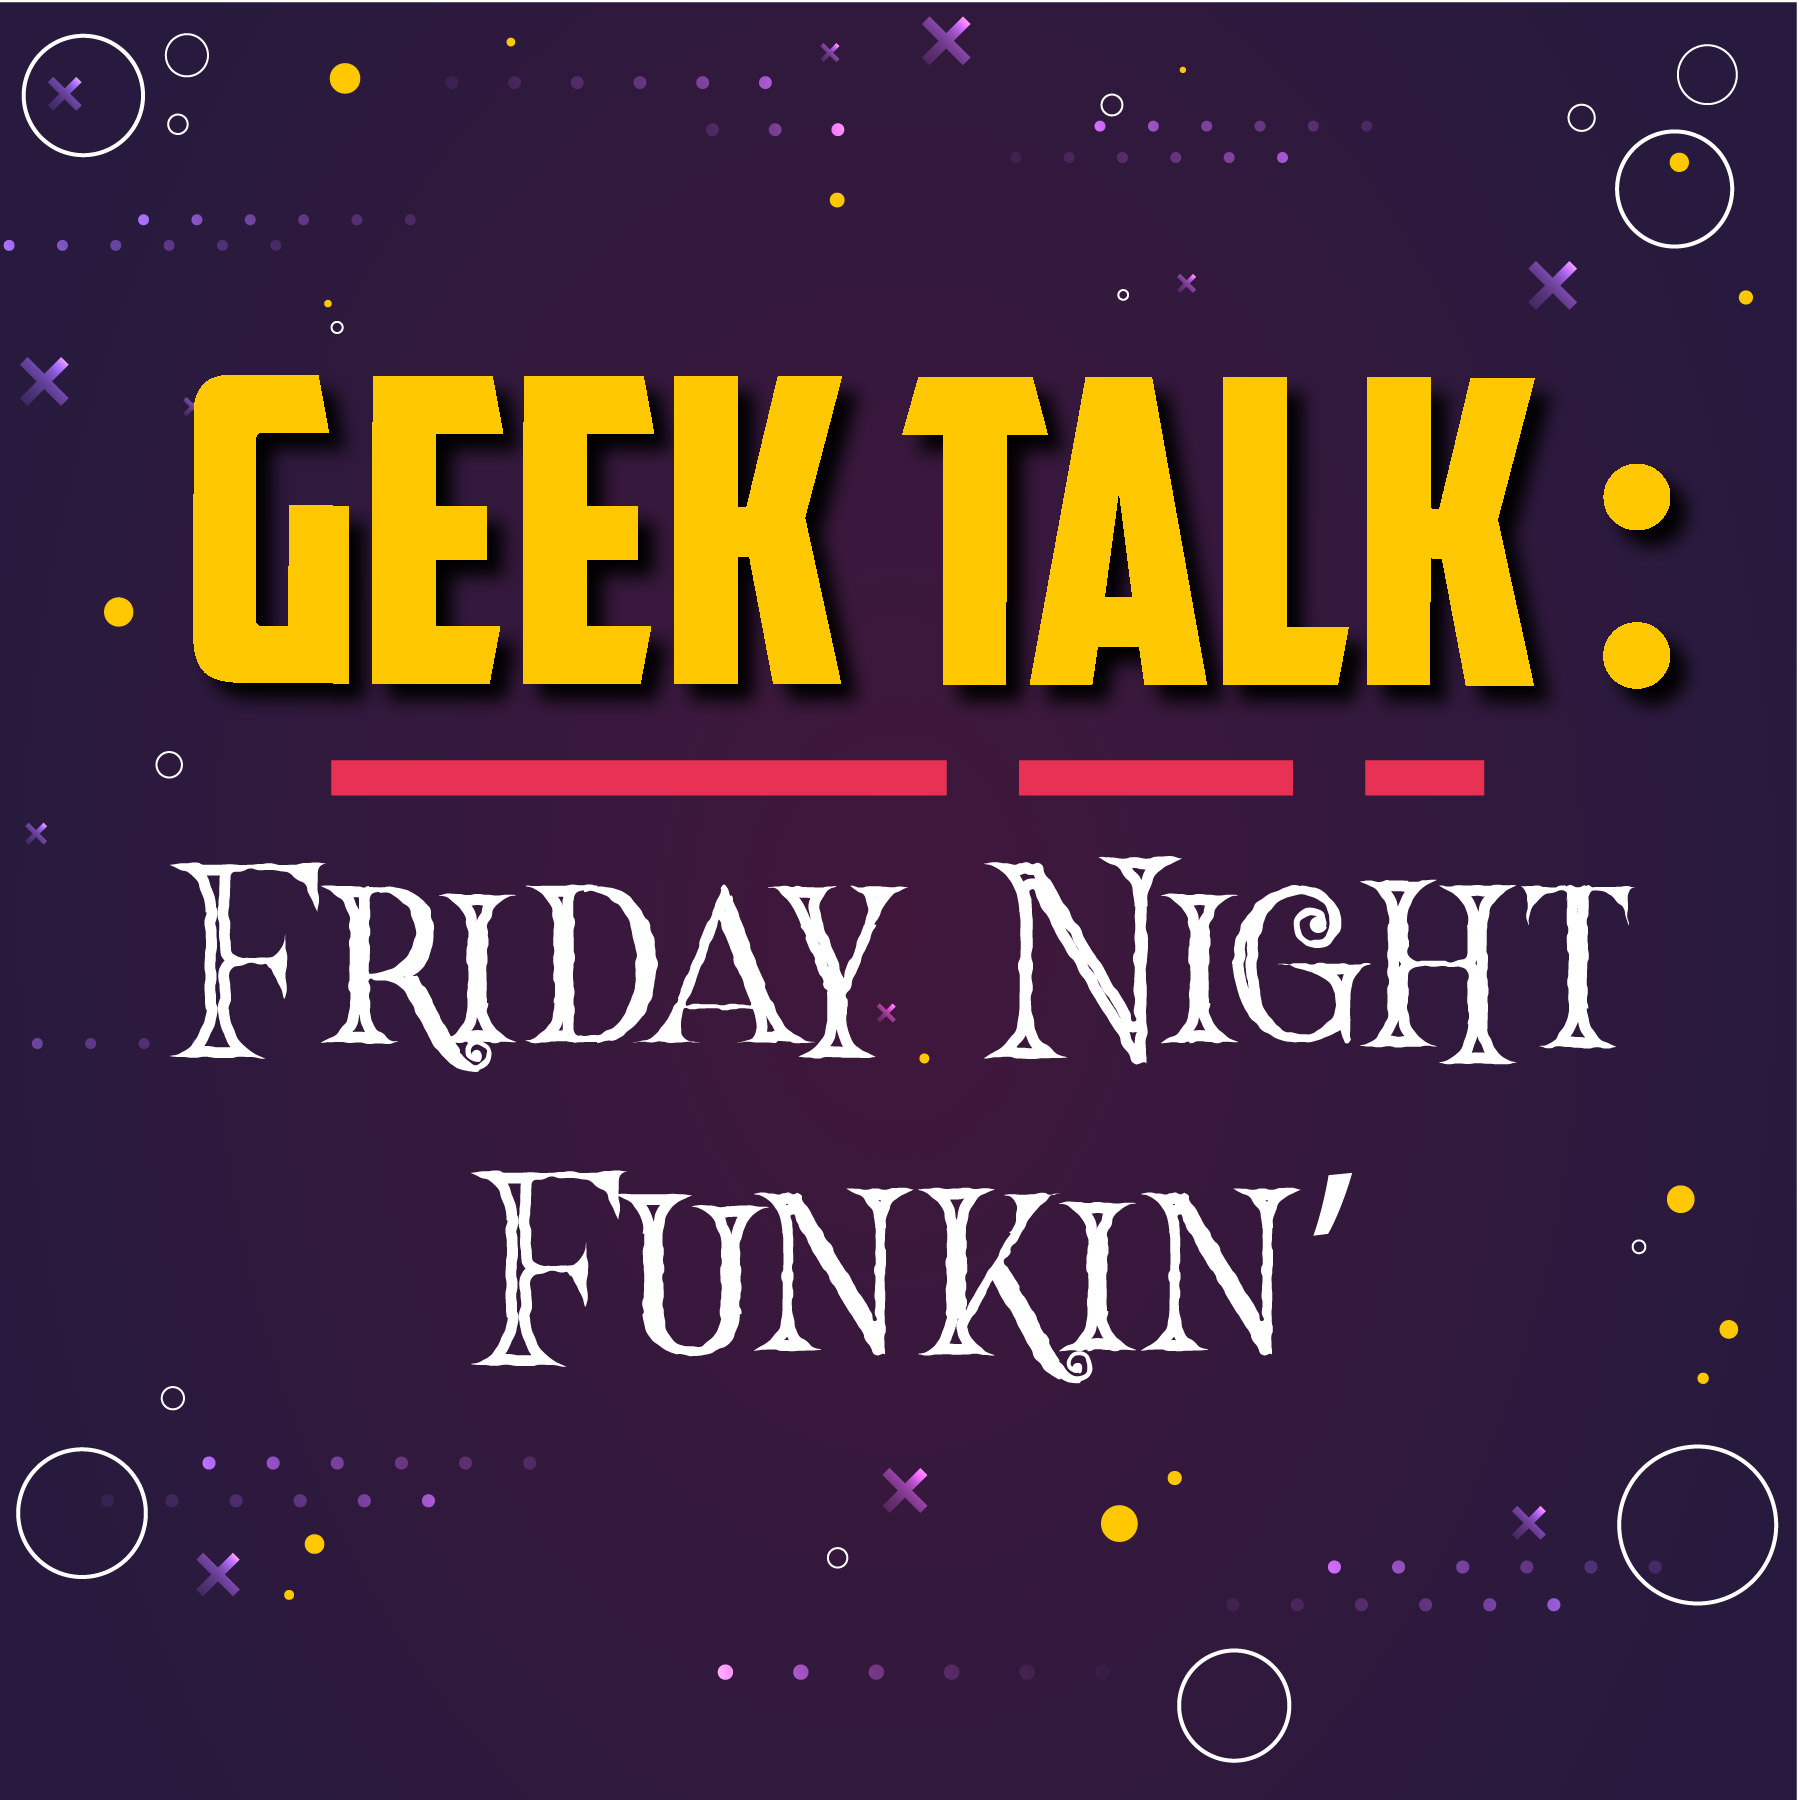 Geek Talk graphic displaying title